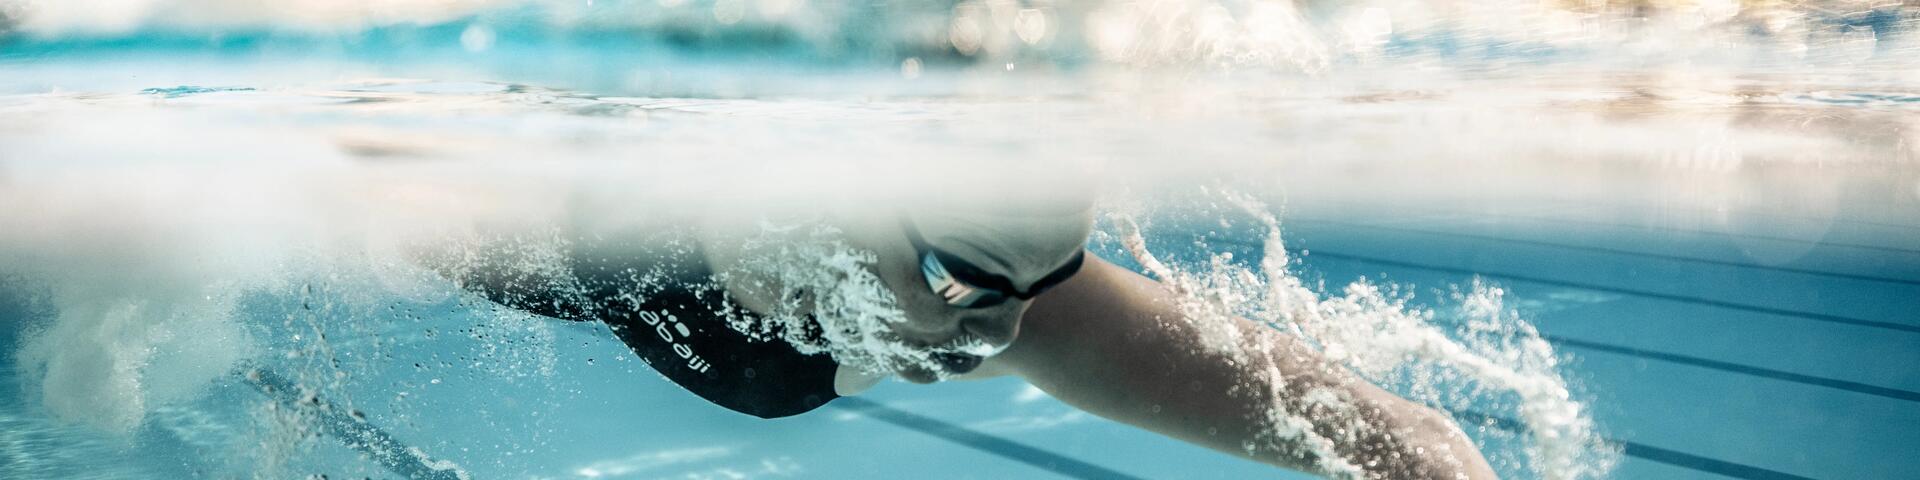 training armspieren tijdens het zwemmen